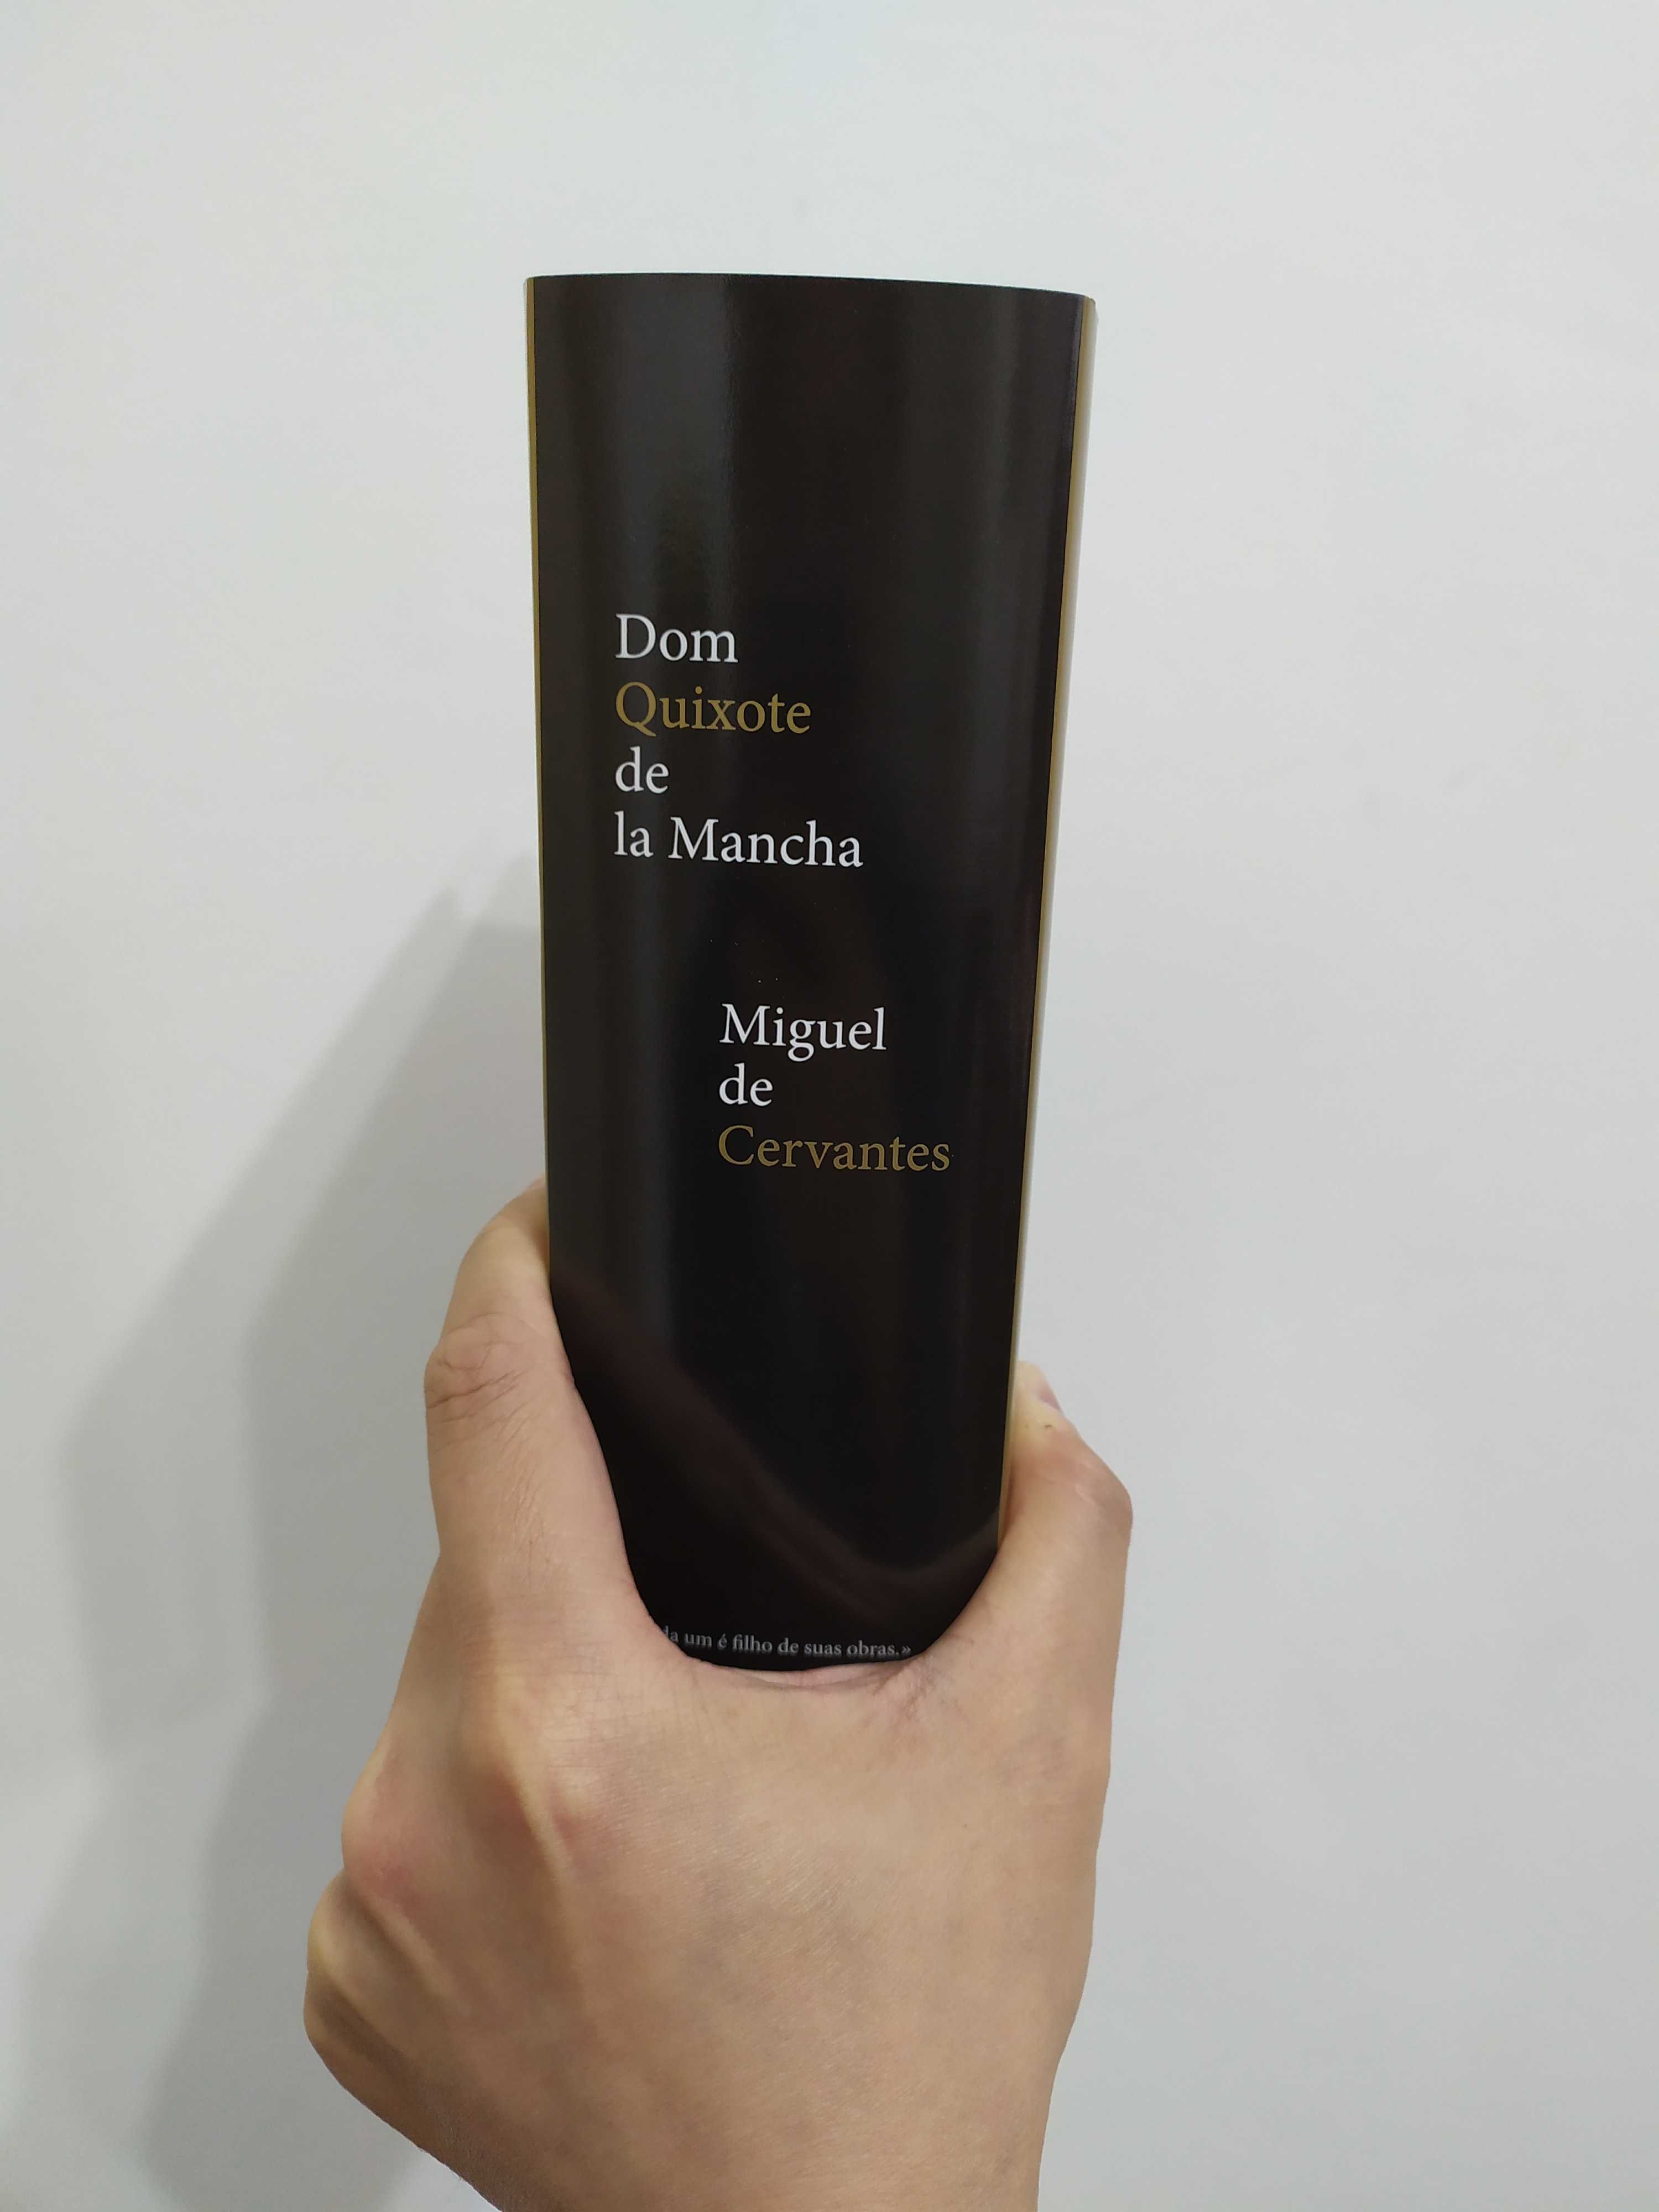 Livro Dom Quixote de la Mancha, de Miguel Cervantes